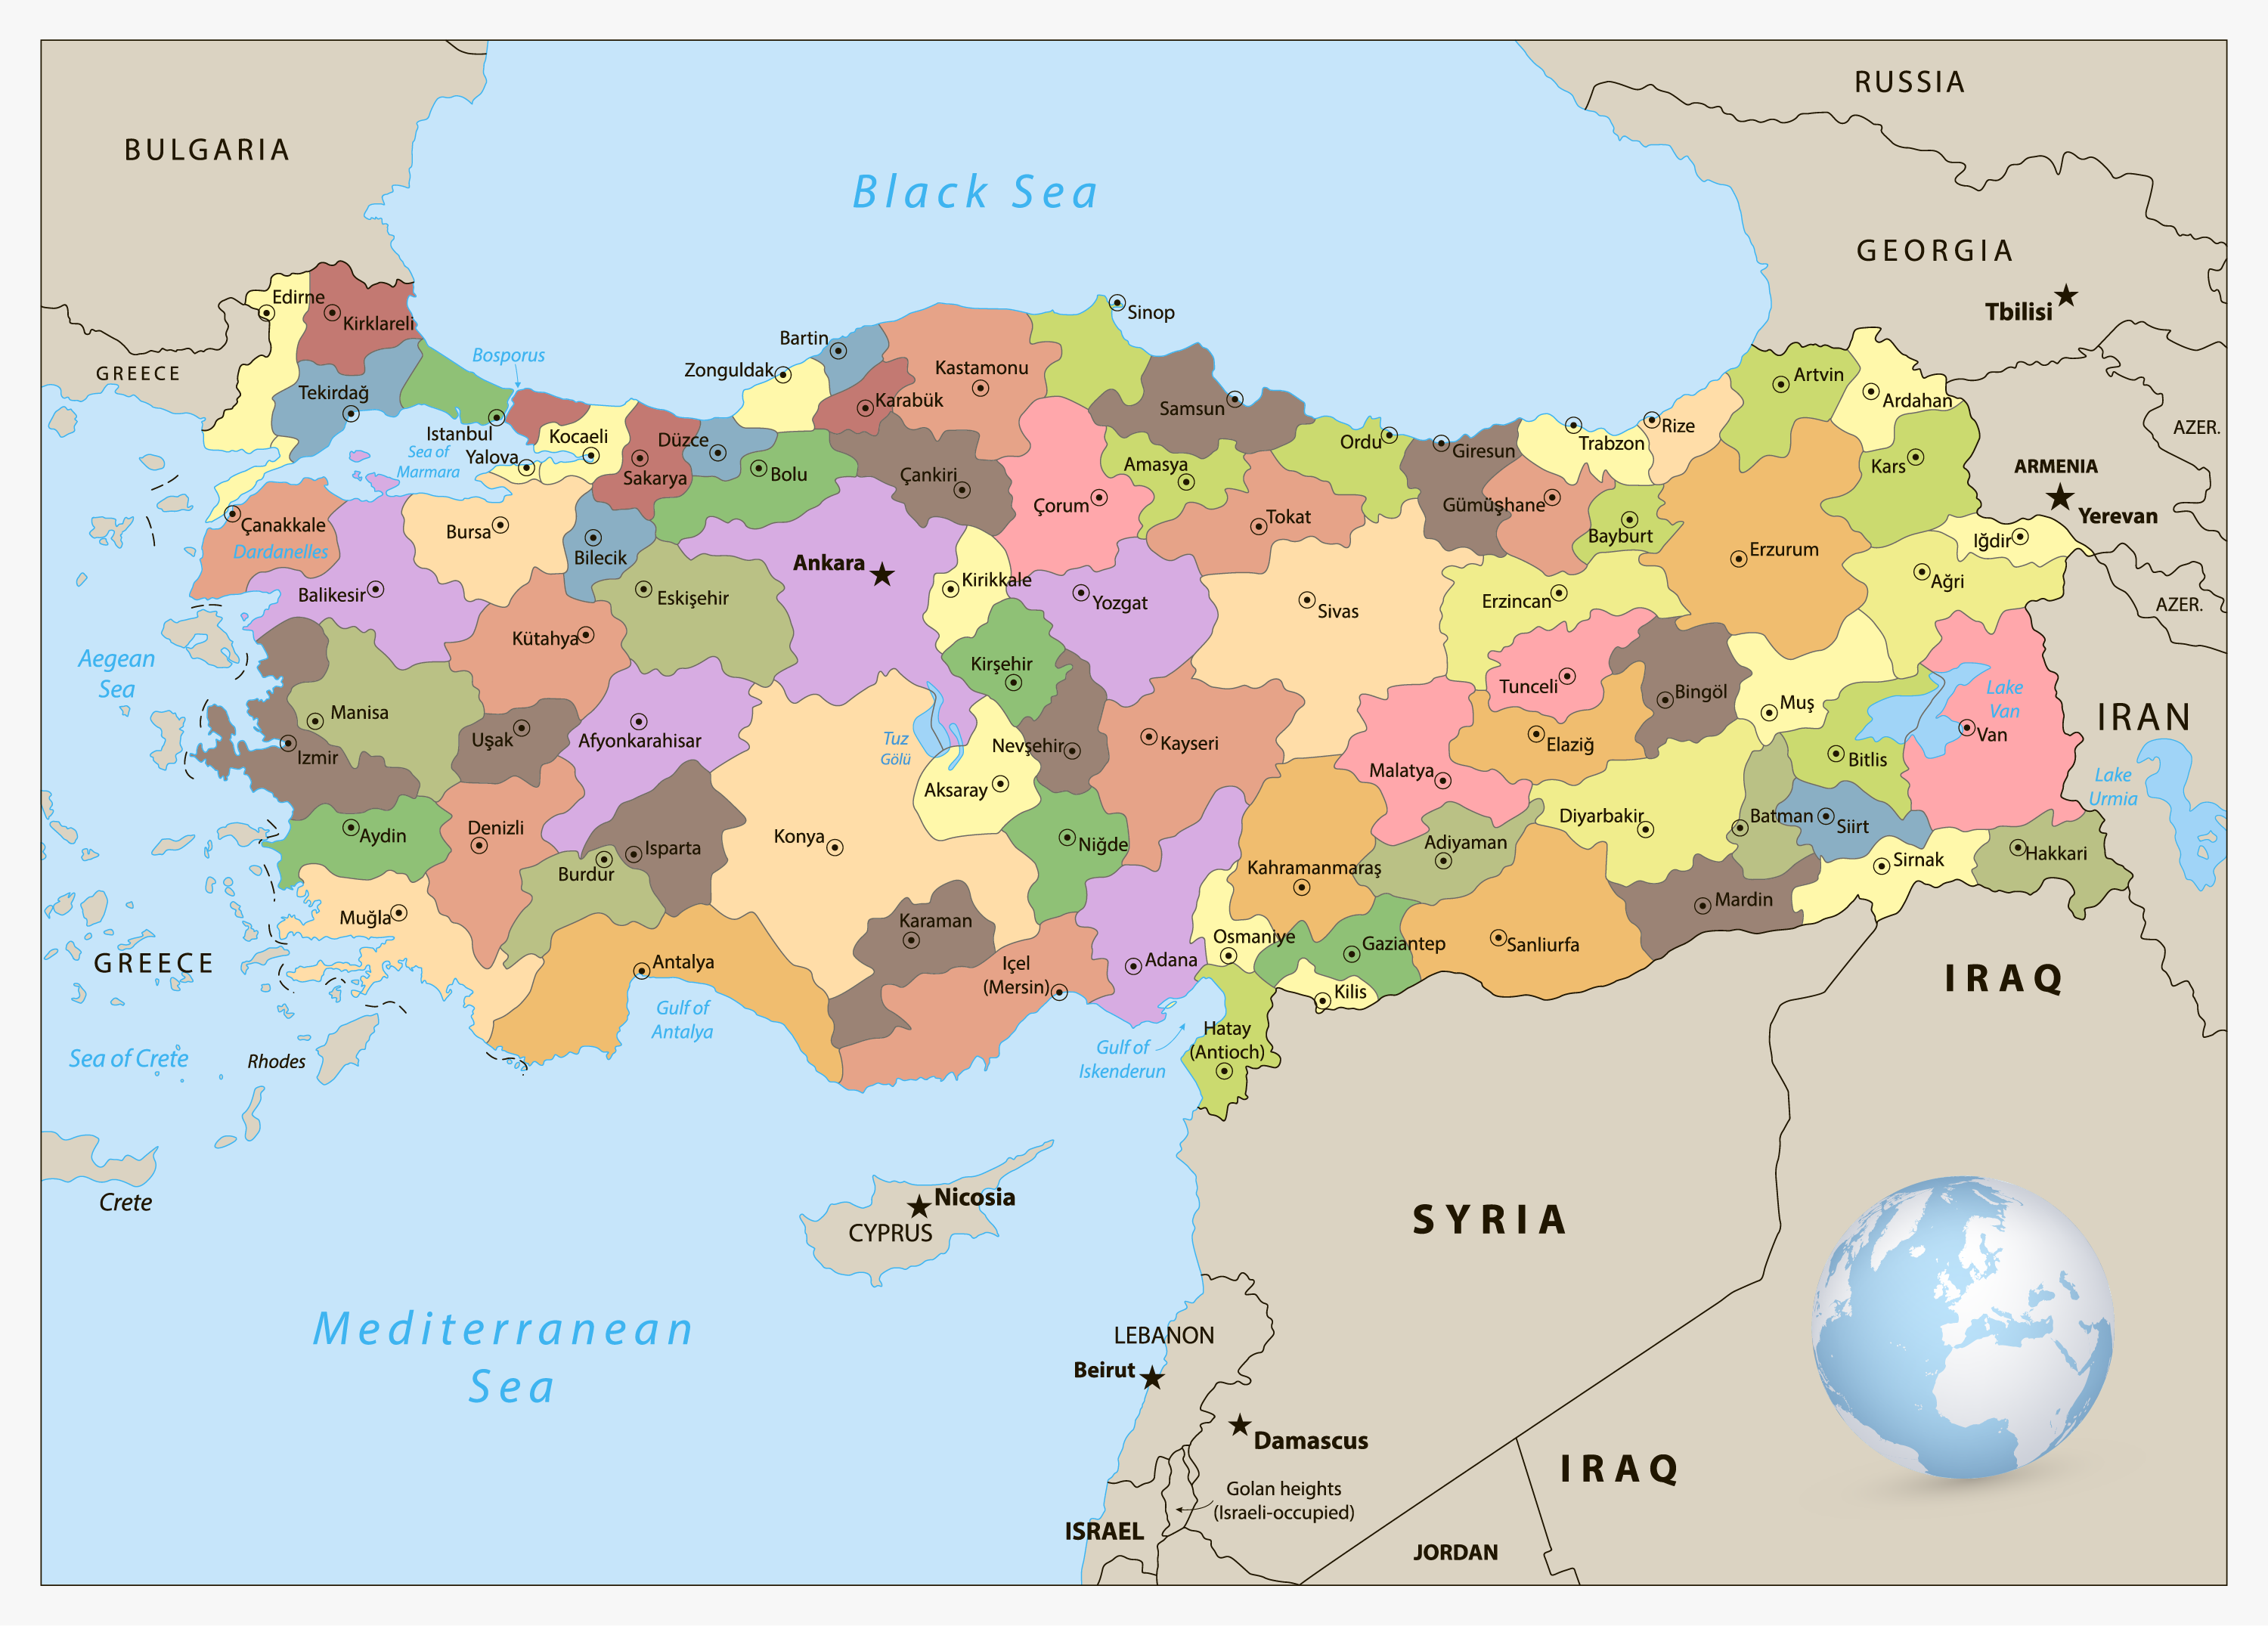 Detailed Political Map Of Turkey Ezilon Maps Images